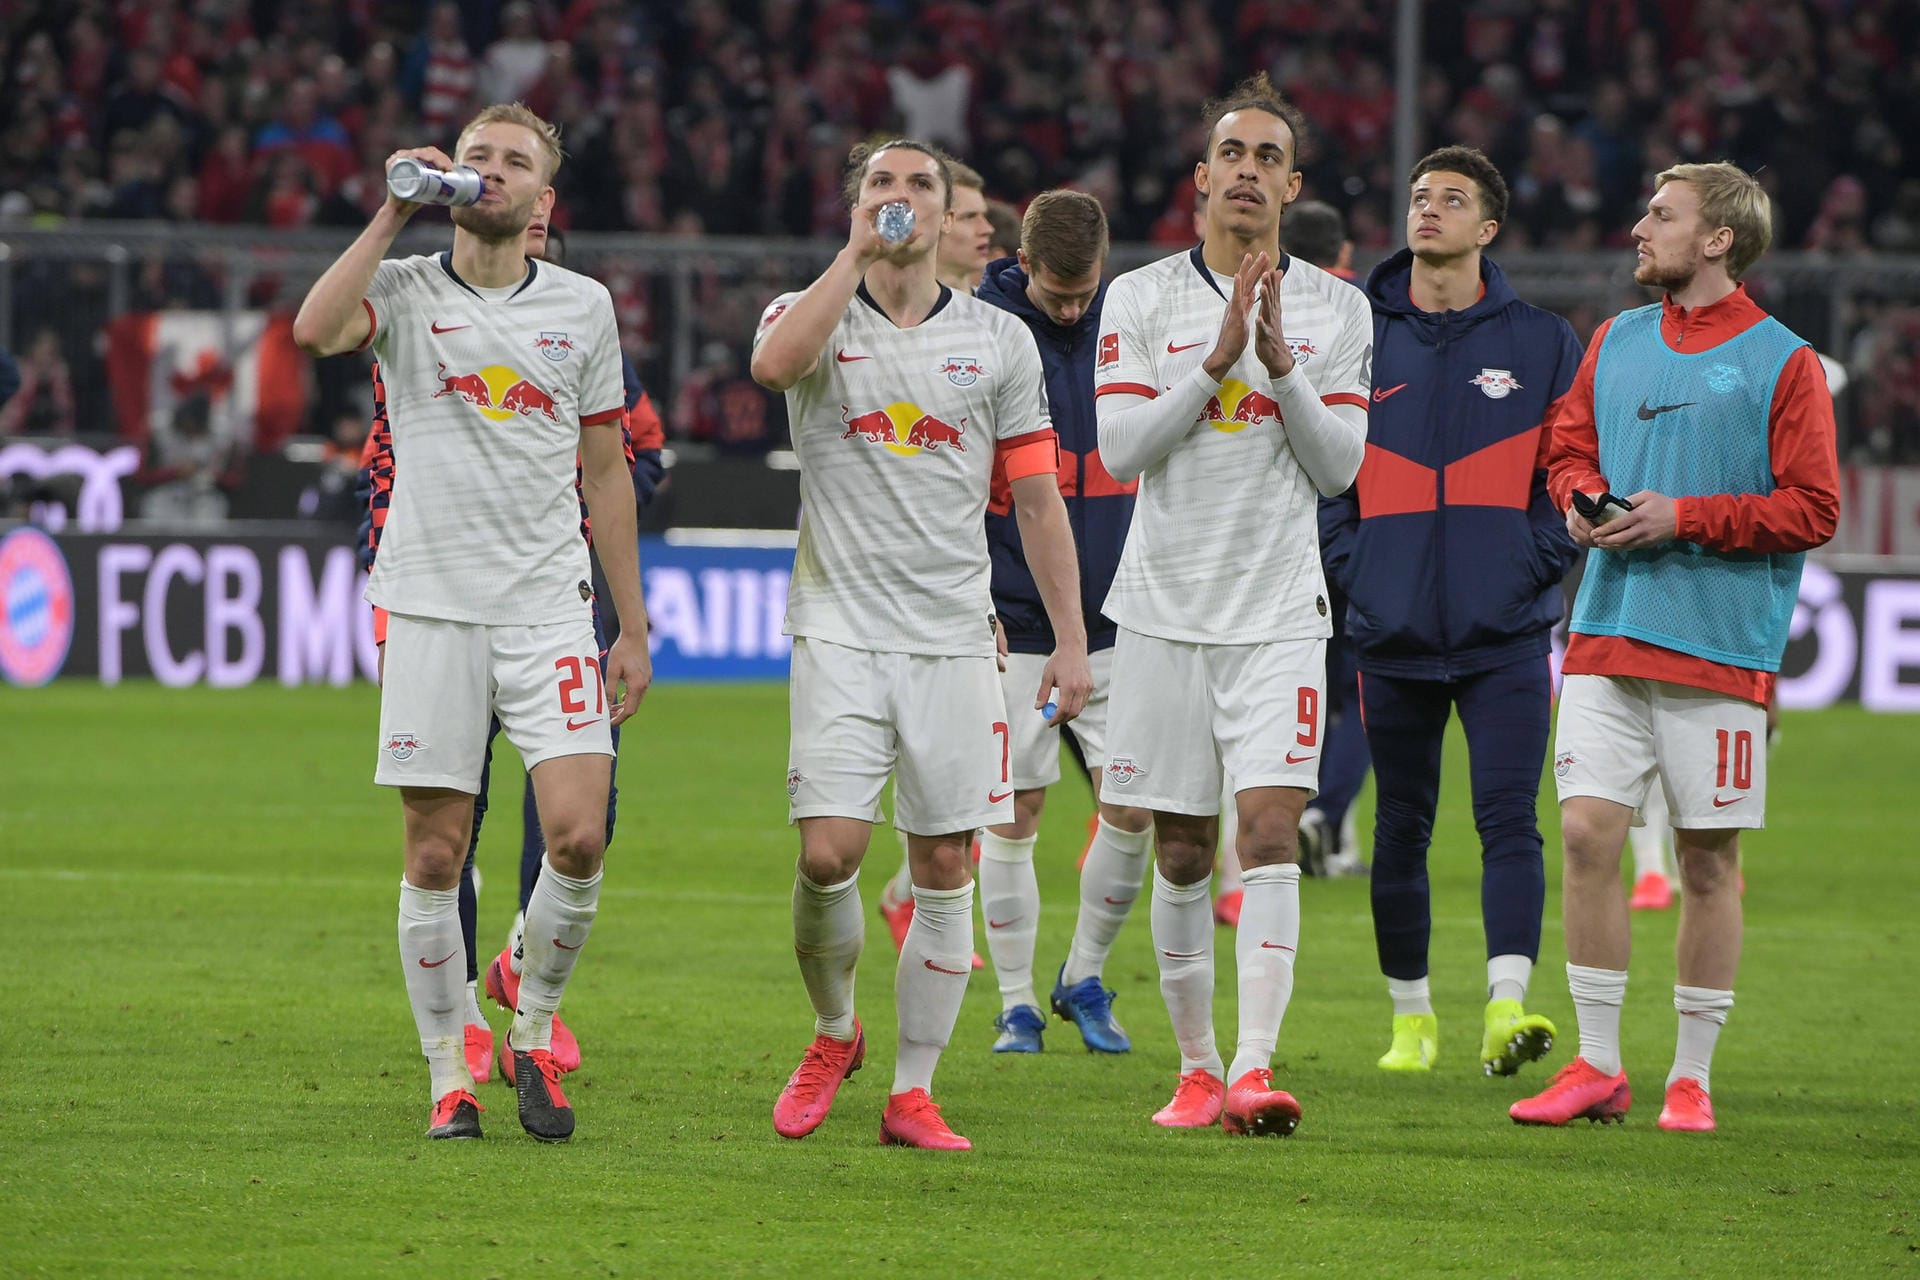 Im Topspiel der Bundesliga trennten sich der FC Bayern München und RB Leipzig mit 0:0. Die Bayern dominierten weite Teile des Spiels, doch auch der Herbstmeister kam zu mehreren Chancen. t-online.de hat die Leistung der Leipziger Spieler in Schulnoten bewertet.